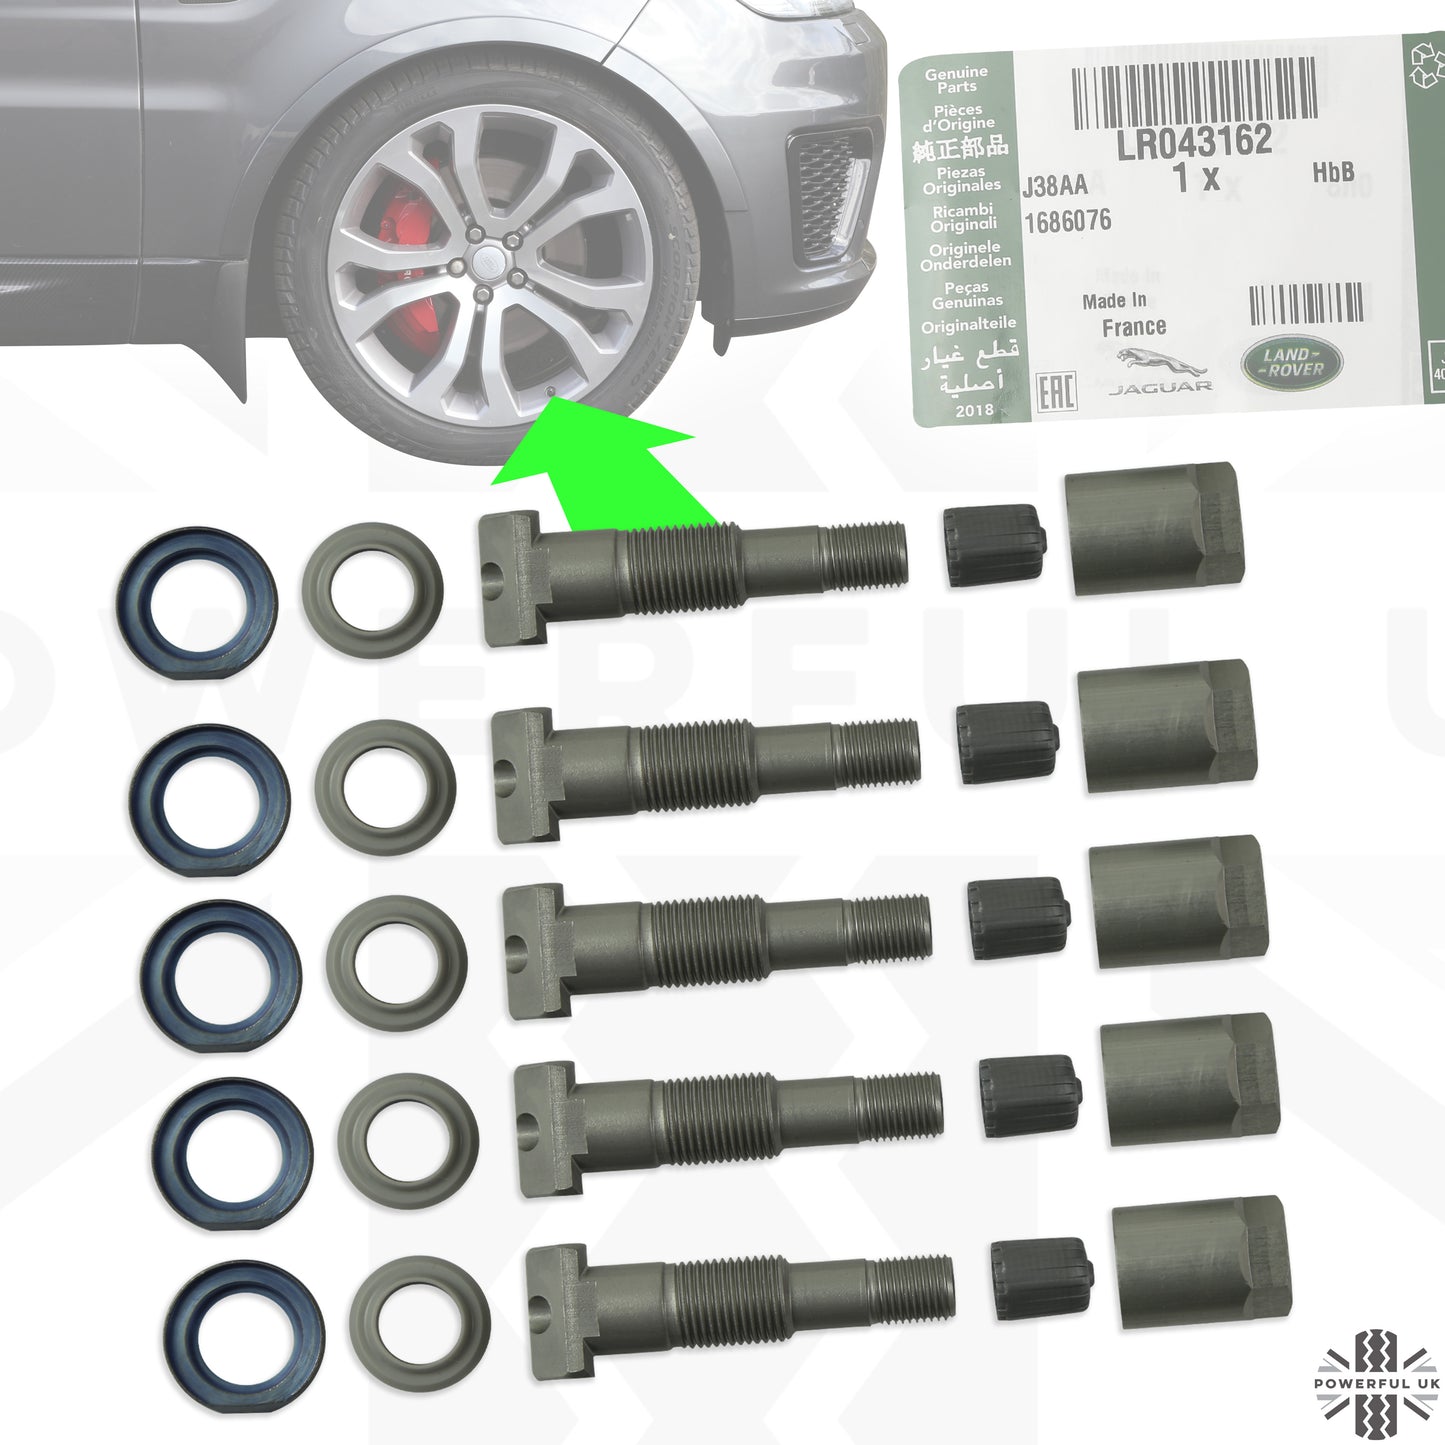 Tyre Pressure Monitoring System (TPMS) Service Kit for Range Rover Velar